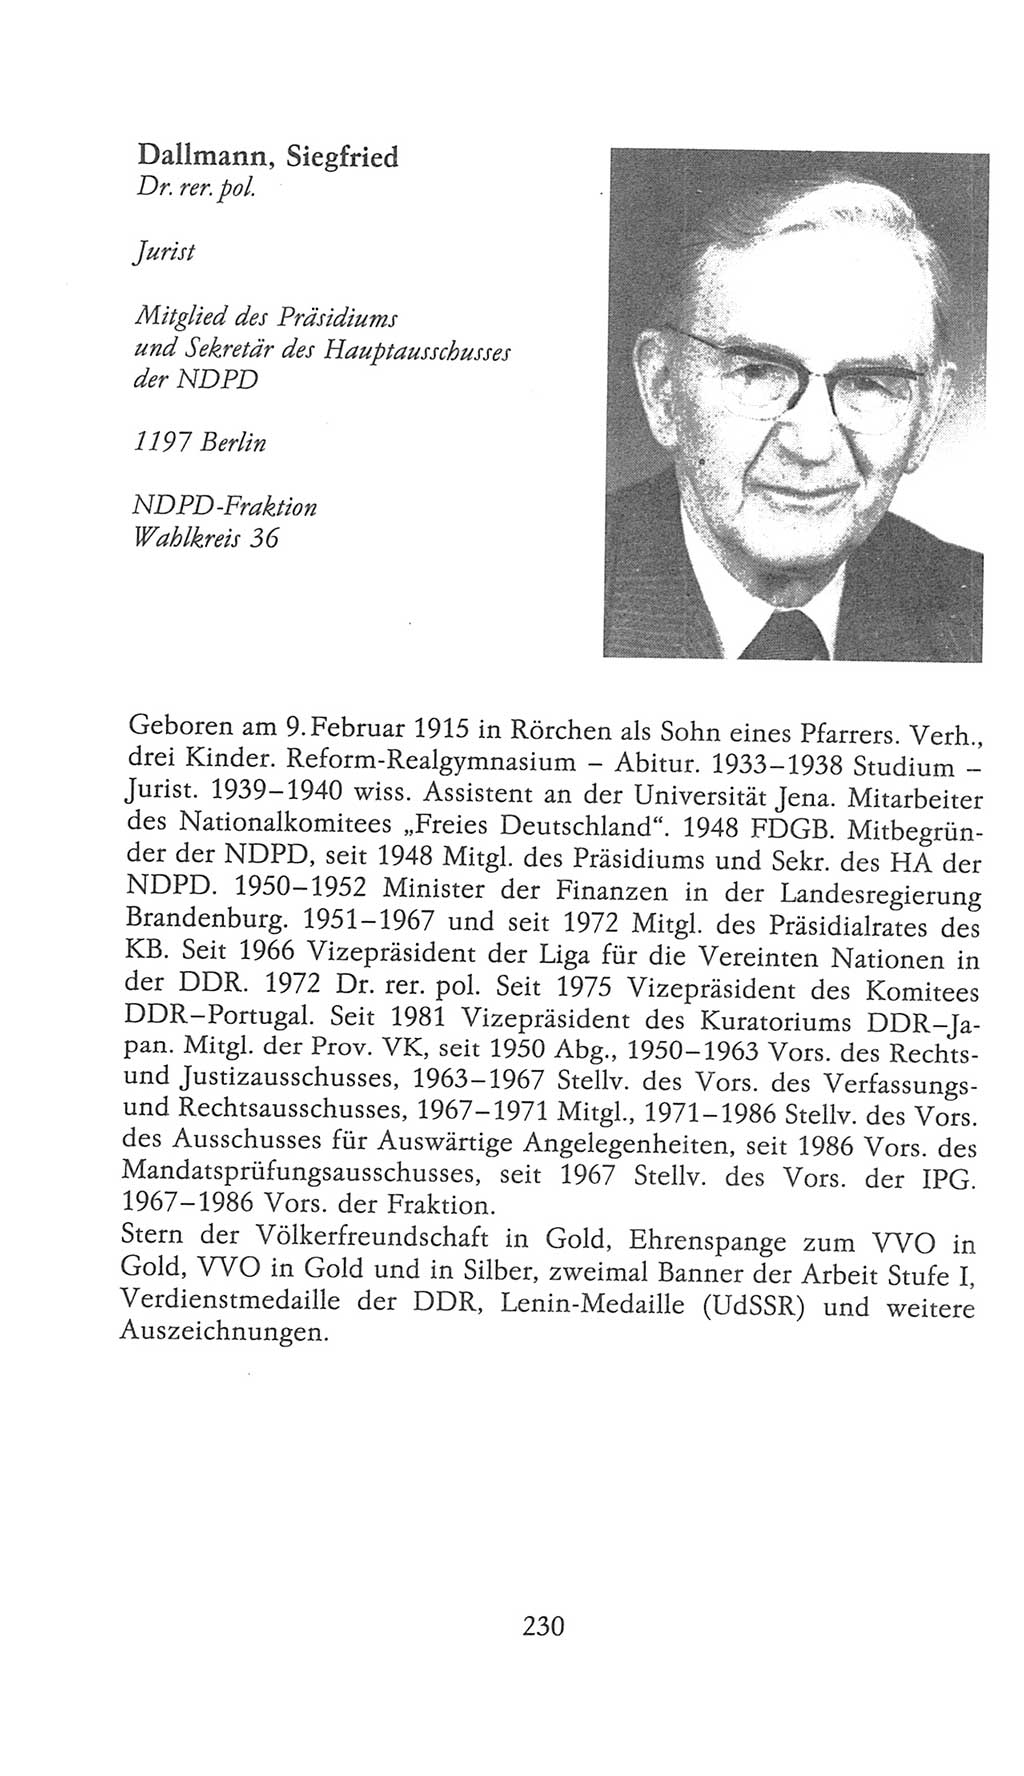 Volkskammer (VK) der Deutschen Demokratischen Republik (DDR), 9. Wahlperiode 1986-1990, Seite 230 (VK. DDR 9. WP. 1986-1990, S. 230)